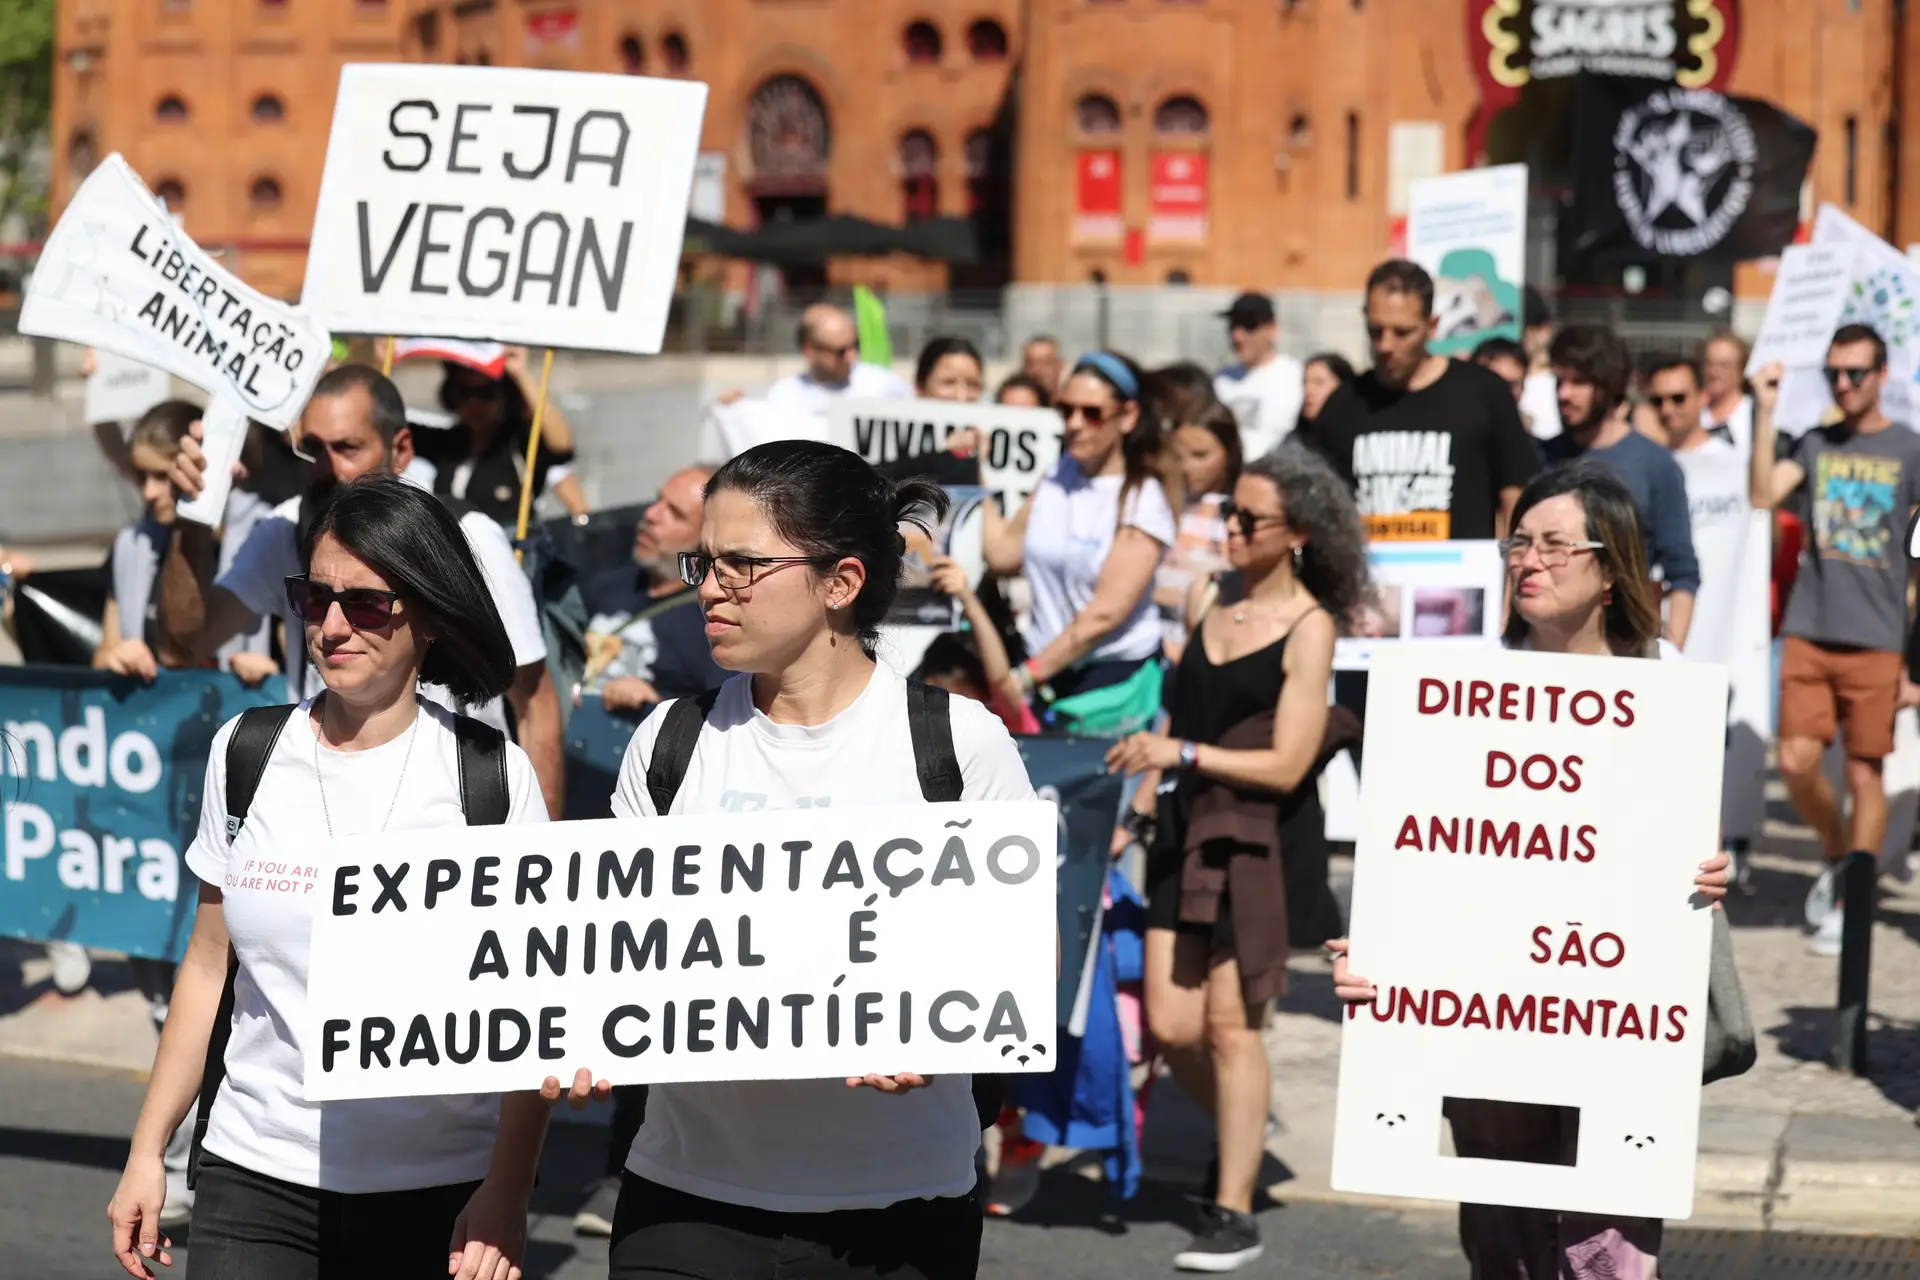 Celebrações e protestos: corrida de touros em Espanha não é consensual -  SIC Notícias